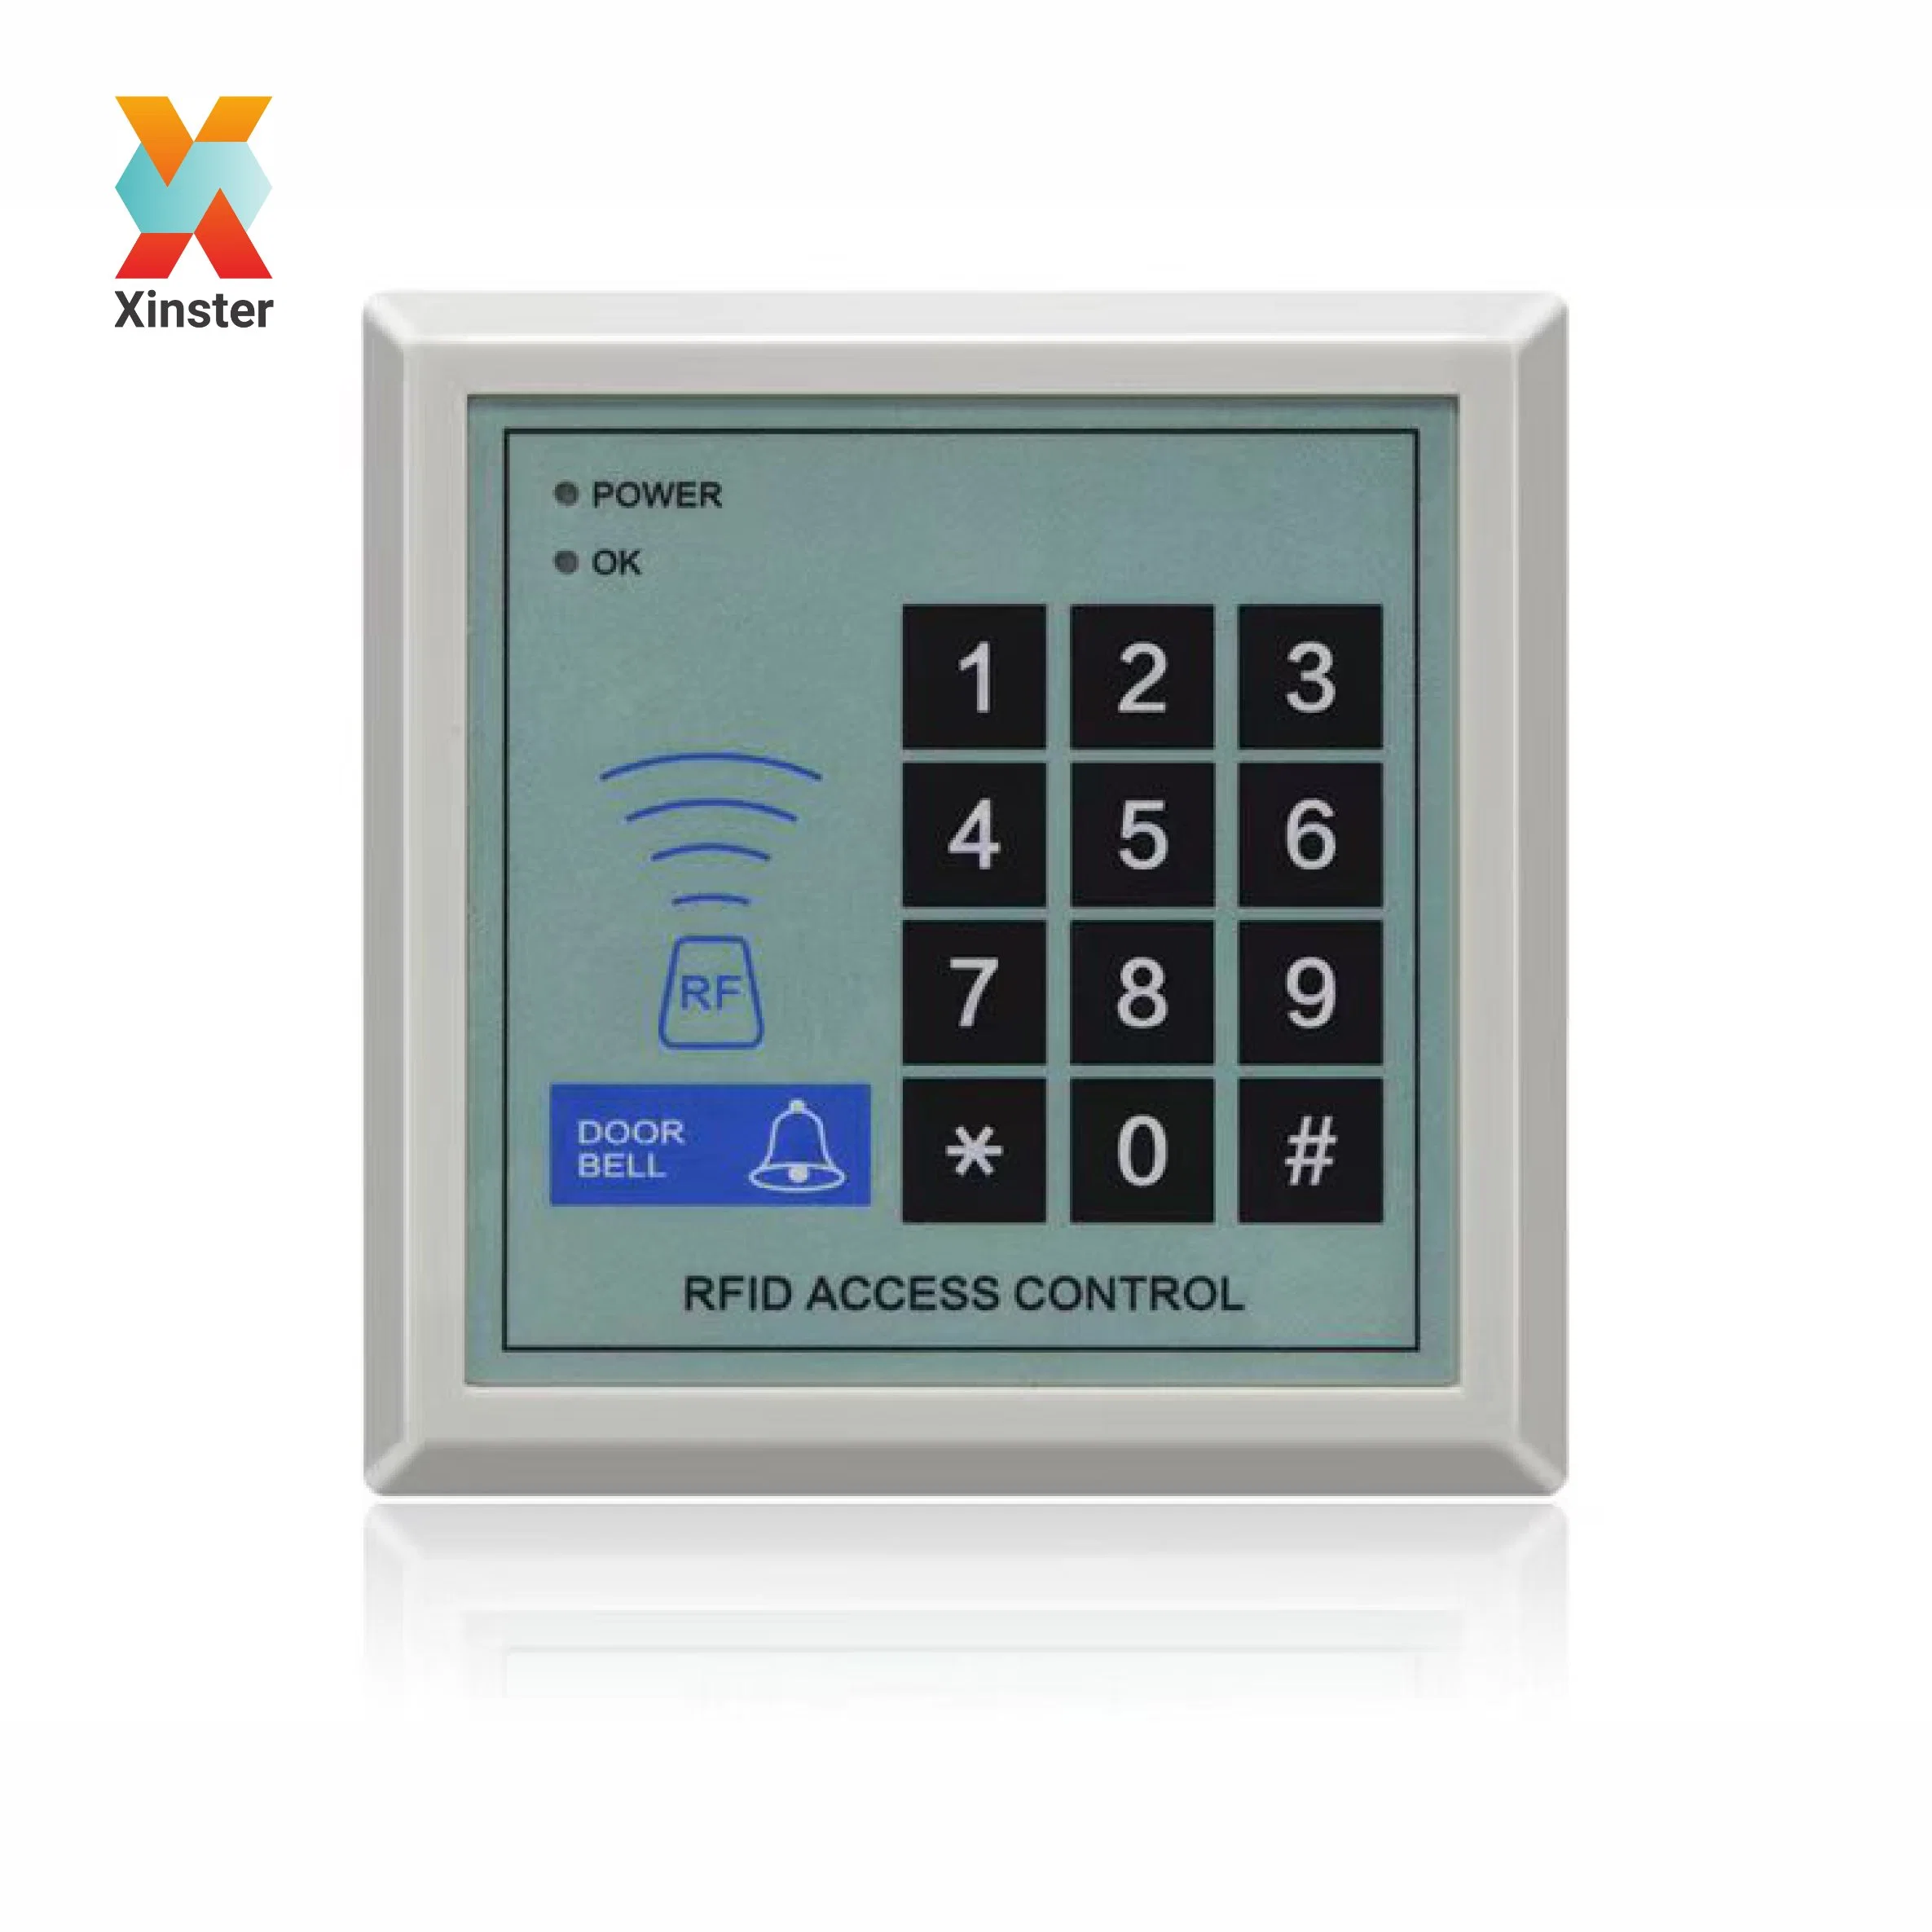 Contrôle d'accès aux portes et dispositif de présence au temps à l'aide du clavier RFID Contrôlé à distance par L'APPLICATION pour smartphone